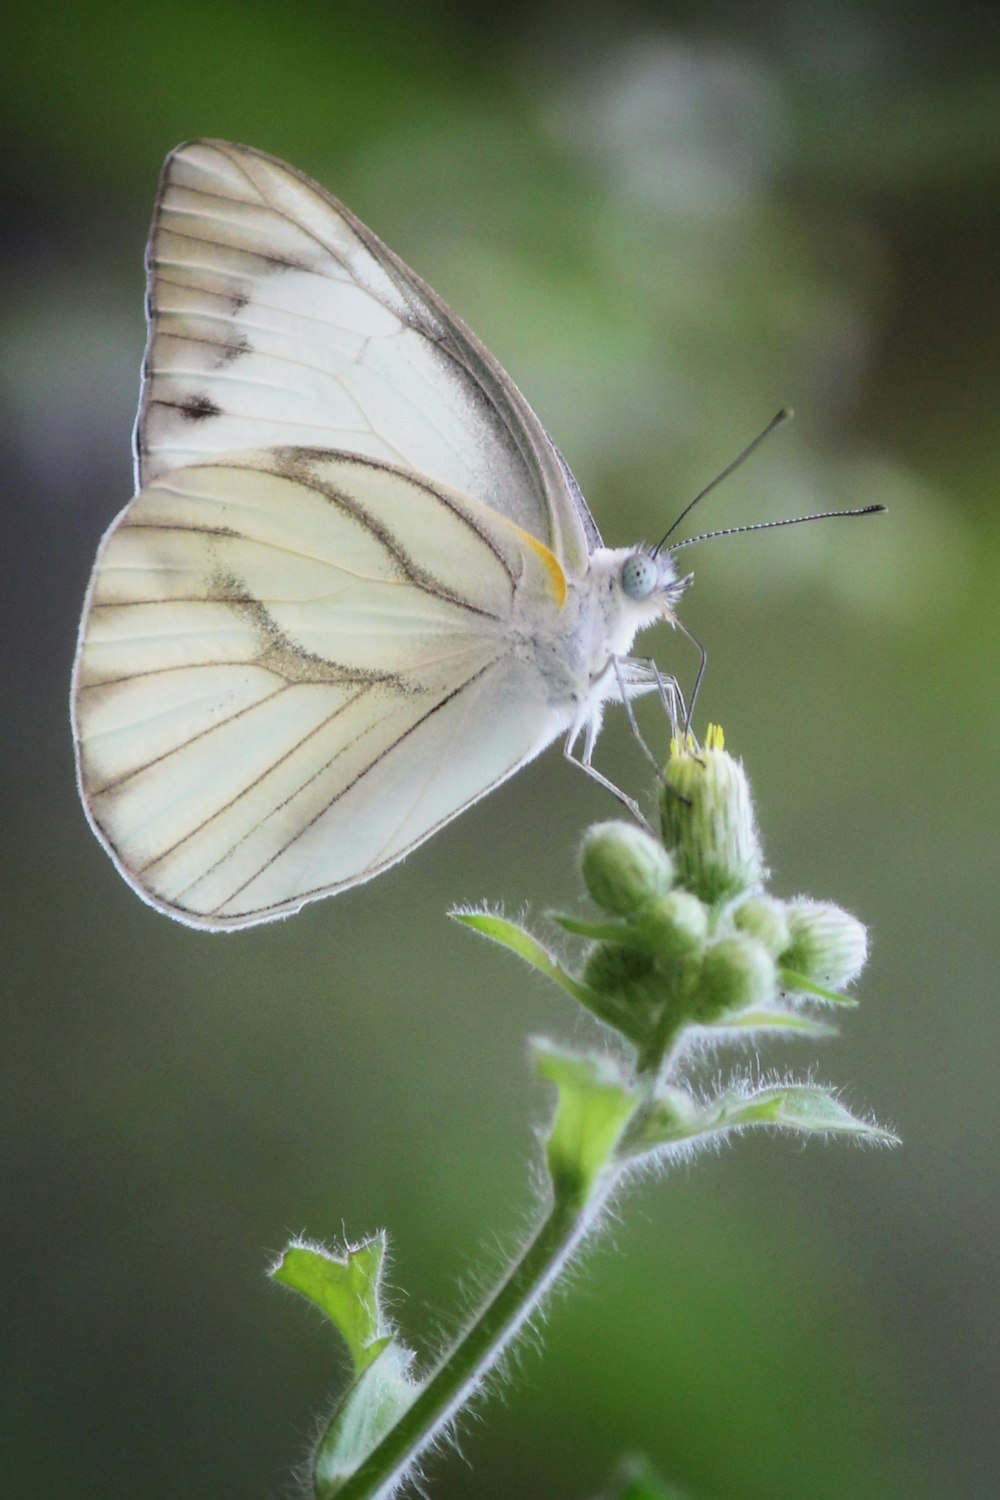 녹색 식물에 자리 잡은 흰색과 회색 나비